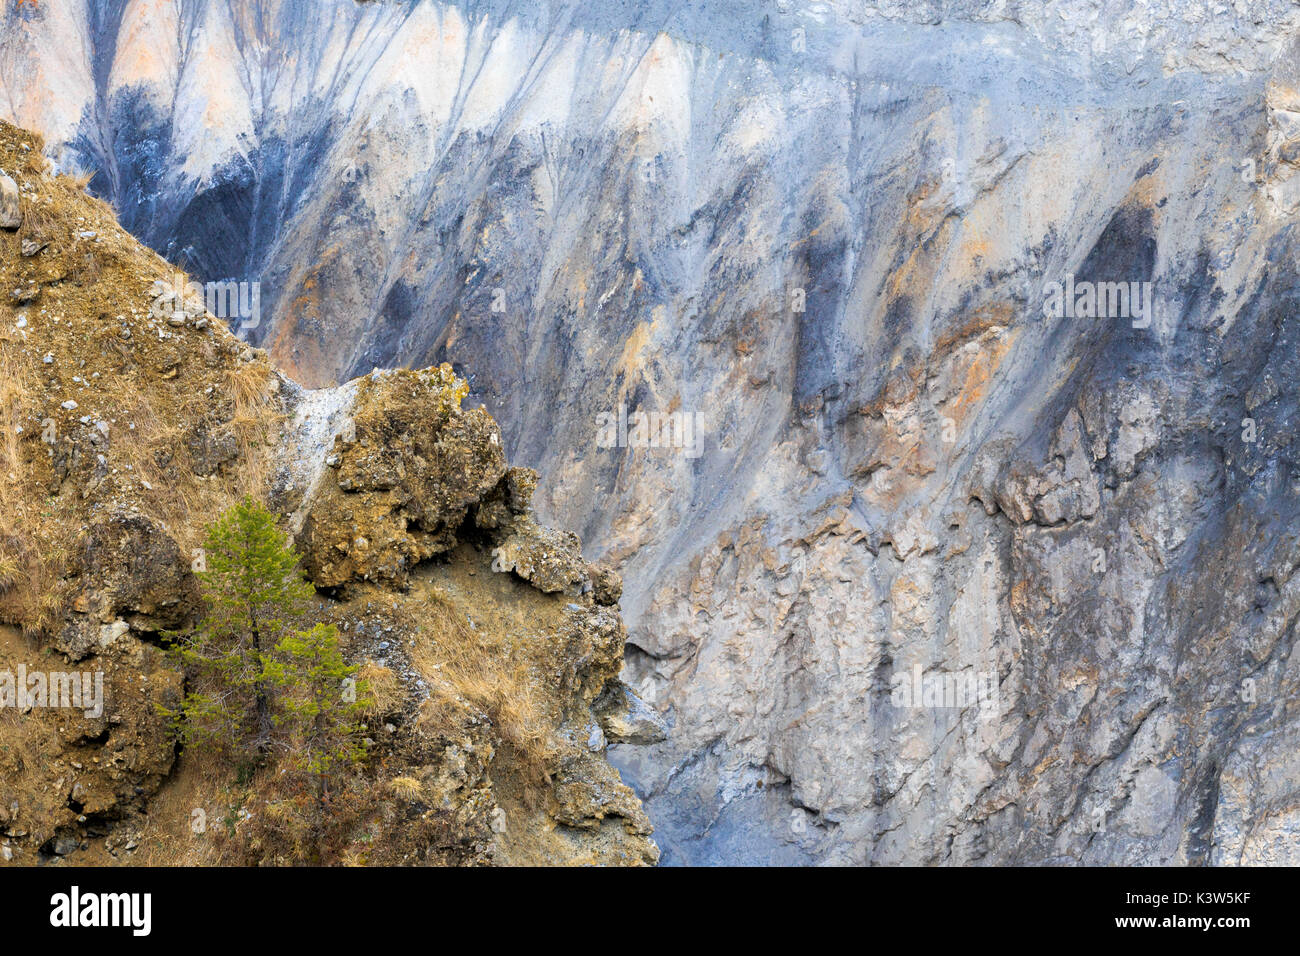 Eine kleine Lärche wächst an den Hängen des Schlucht. Rhein Schlucht (ruinaulta), Flims, Landquart, Graubünden, Schweiz, Europa Stockfoto